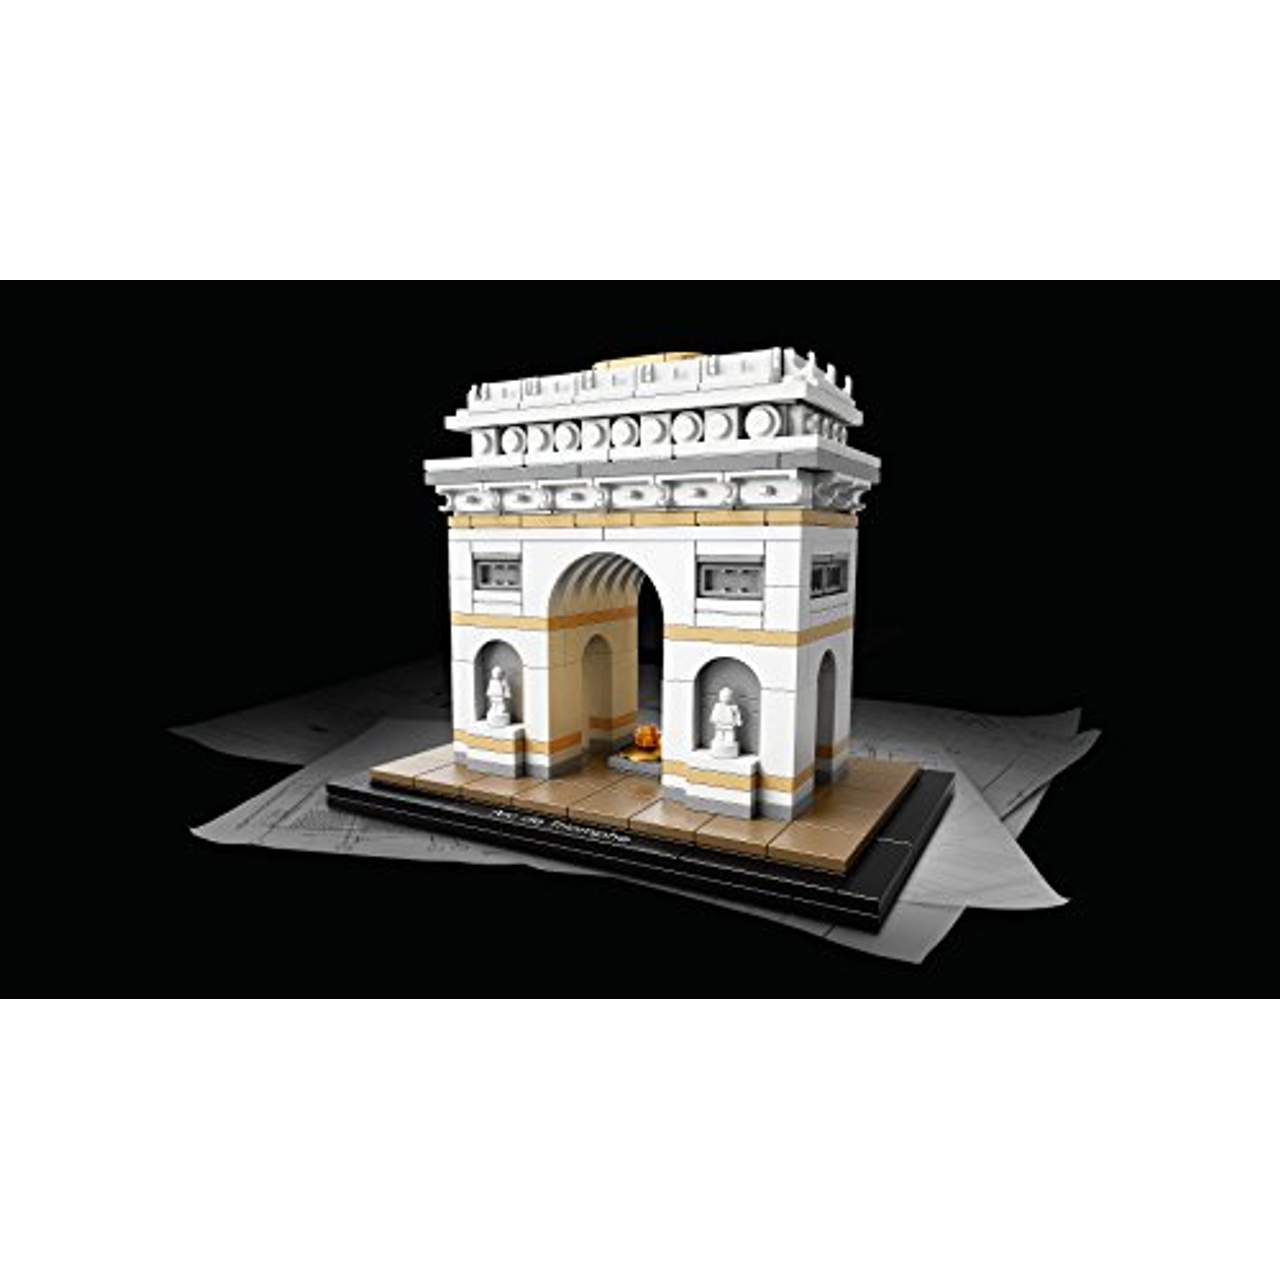 LEGO Architecture 21036 Der Triumphbogen